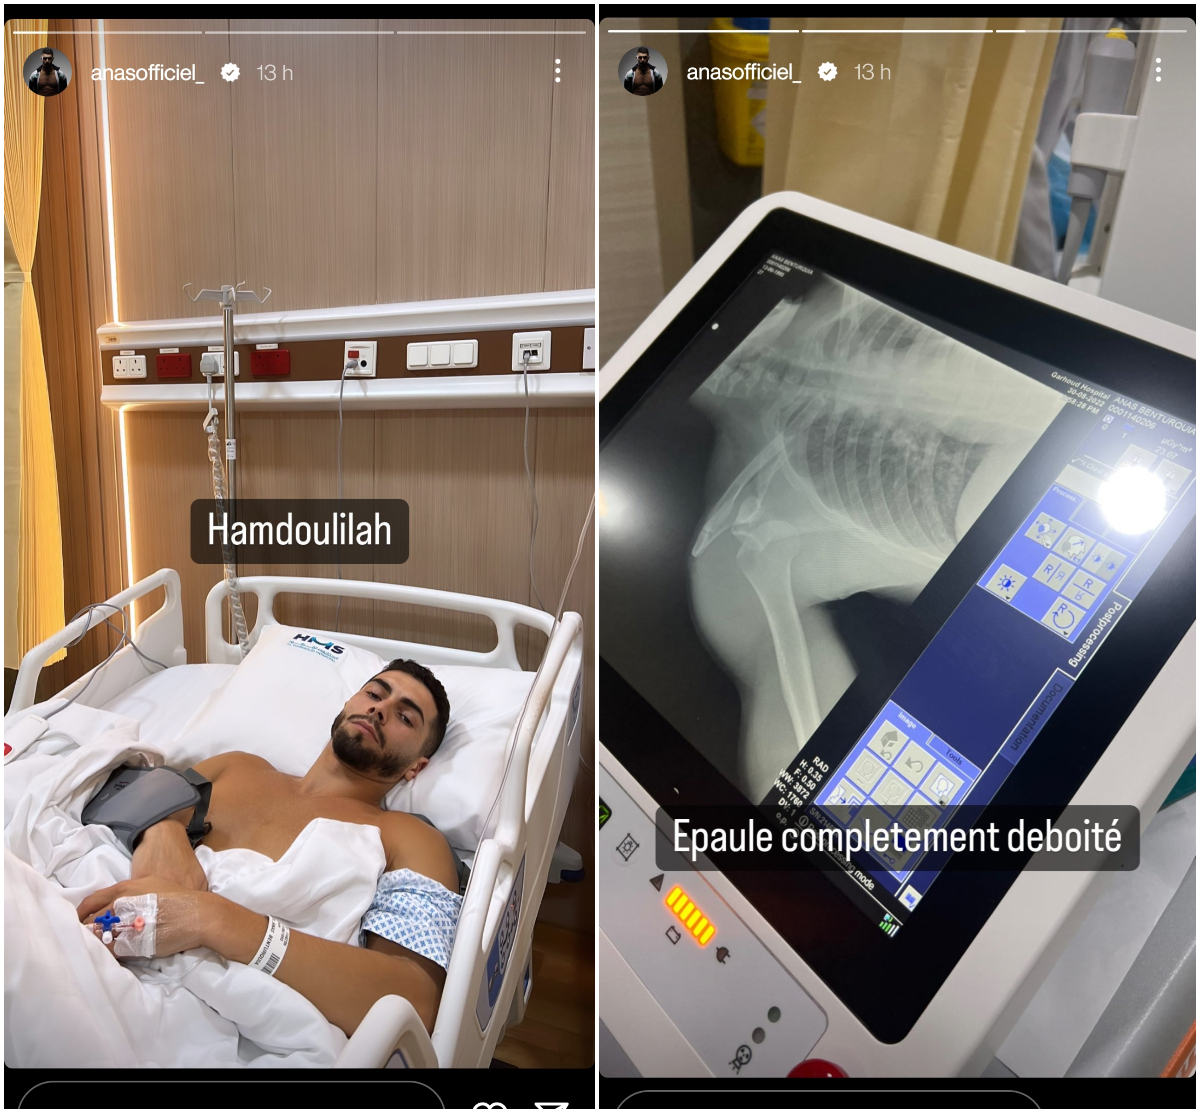  Anas dans son lit d'hôpital avec l'épaule déboitée @Instagram